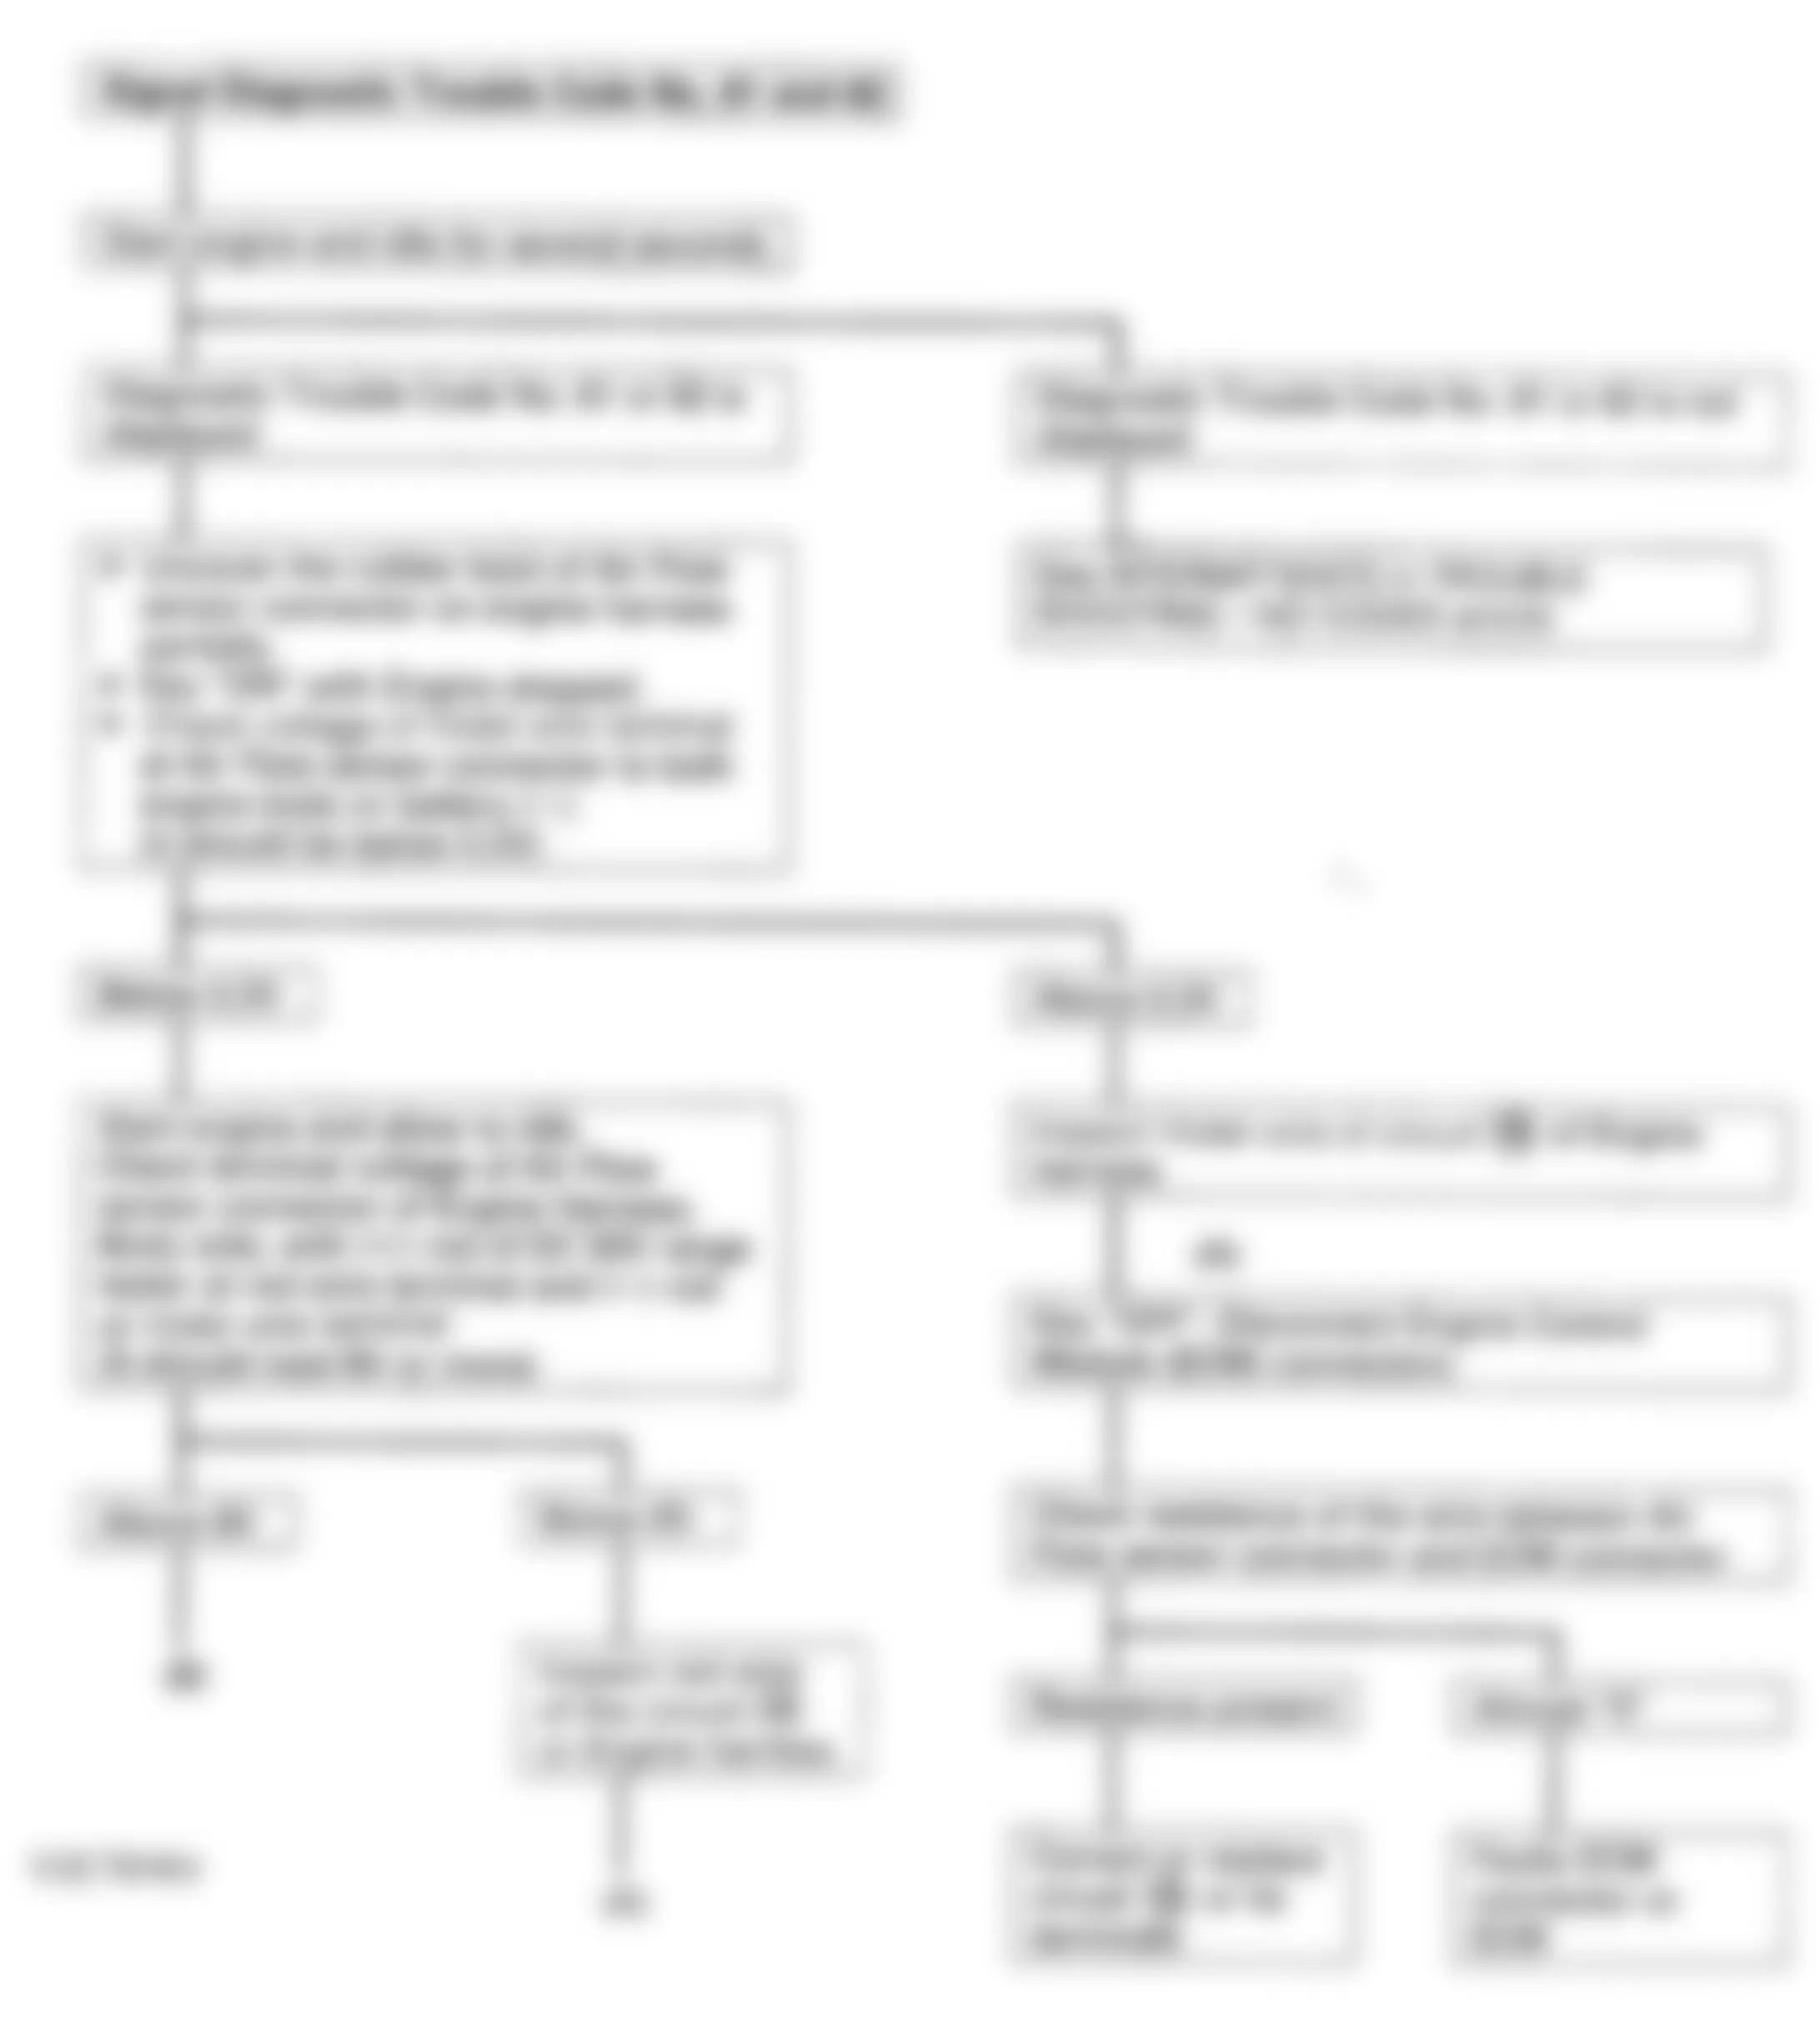 Isuzu Rodeo LS 1994 - Component Locations -  Code 61, 62 - Diagnostic Flowchart (1 Of 2)